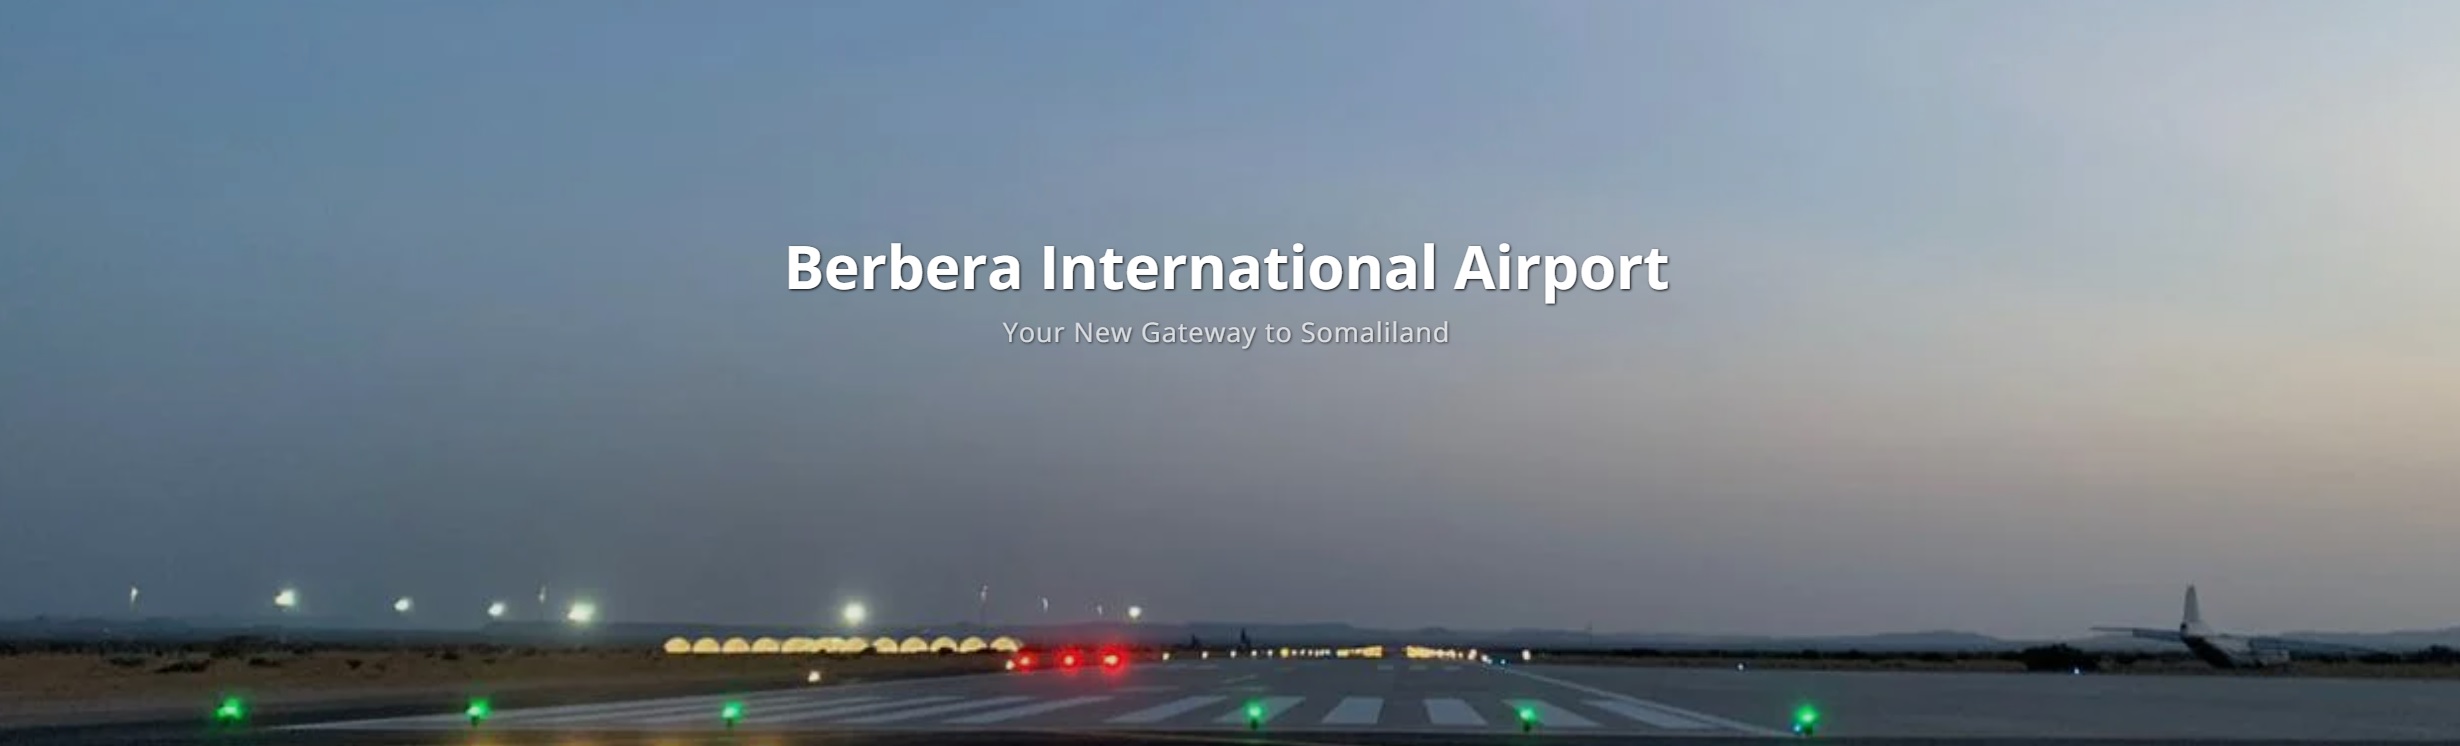 berbera airport .jpg